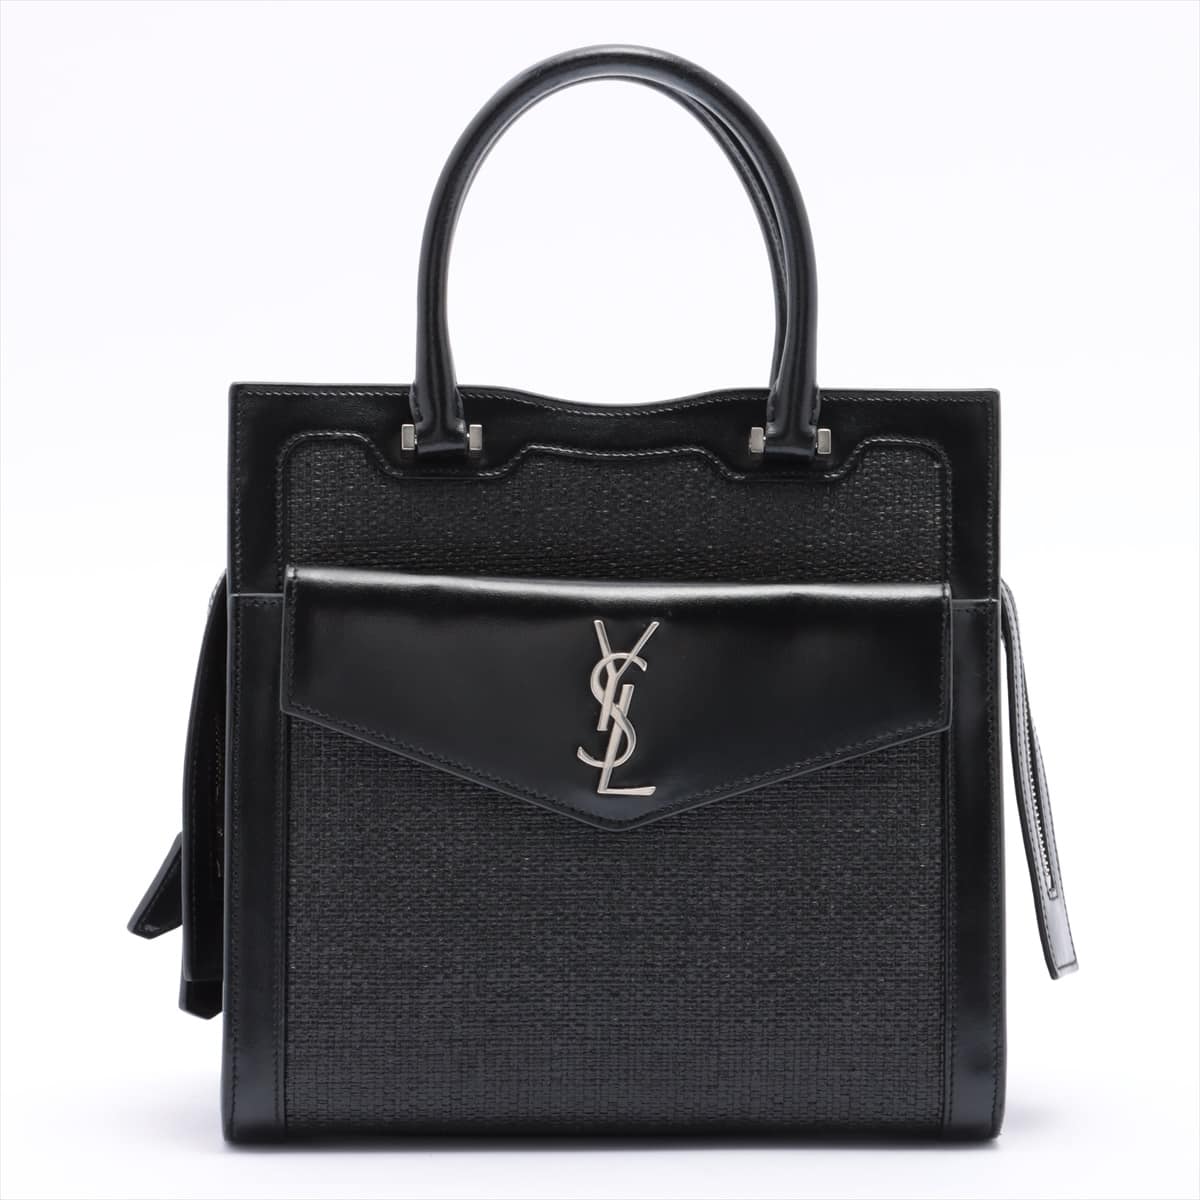 Saint Laurent Paris Uptown Straw & leather Hand bag Black 561203